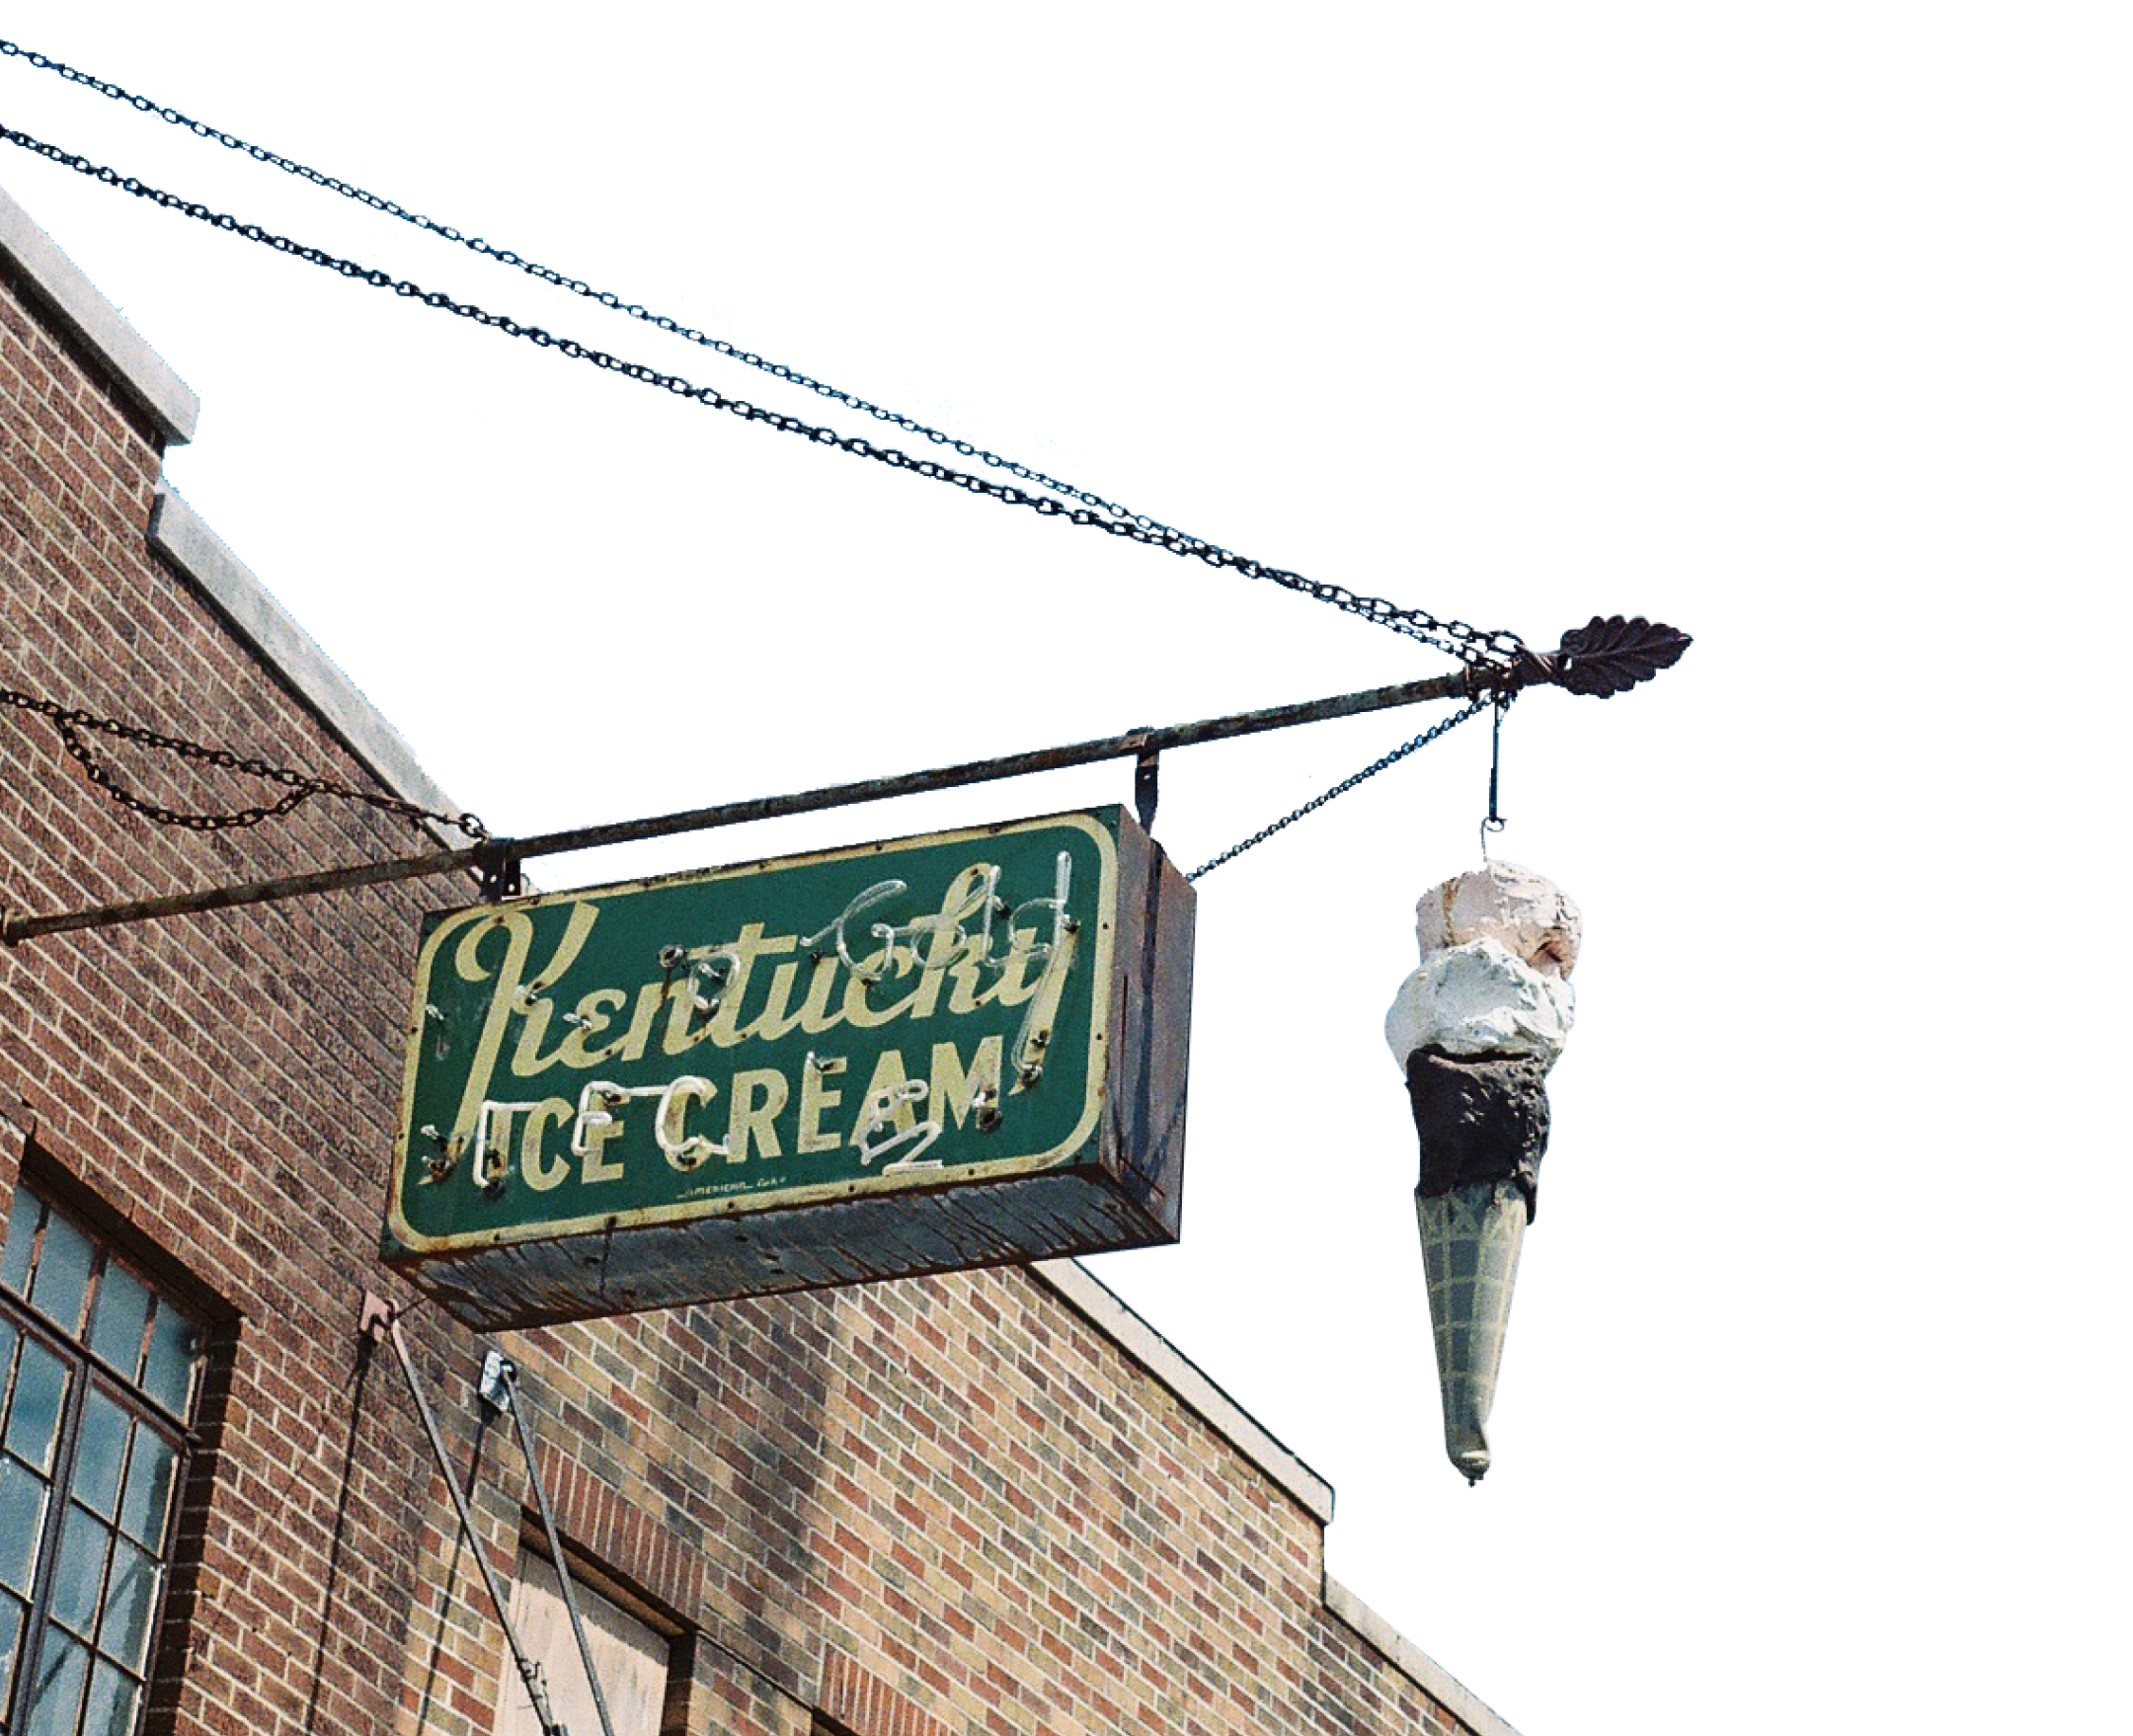 Kentucky ice cream shop sign